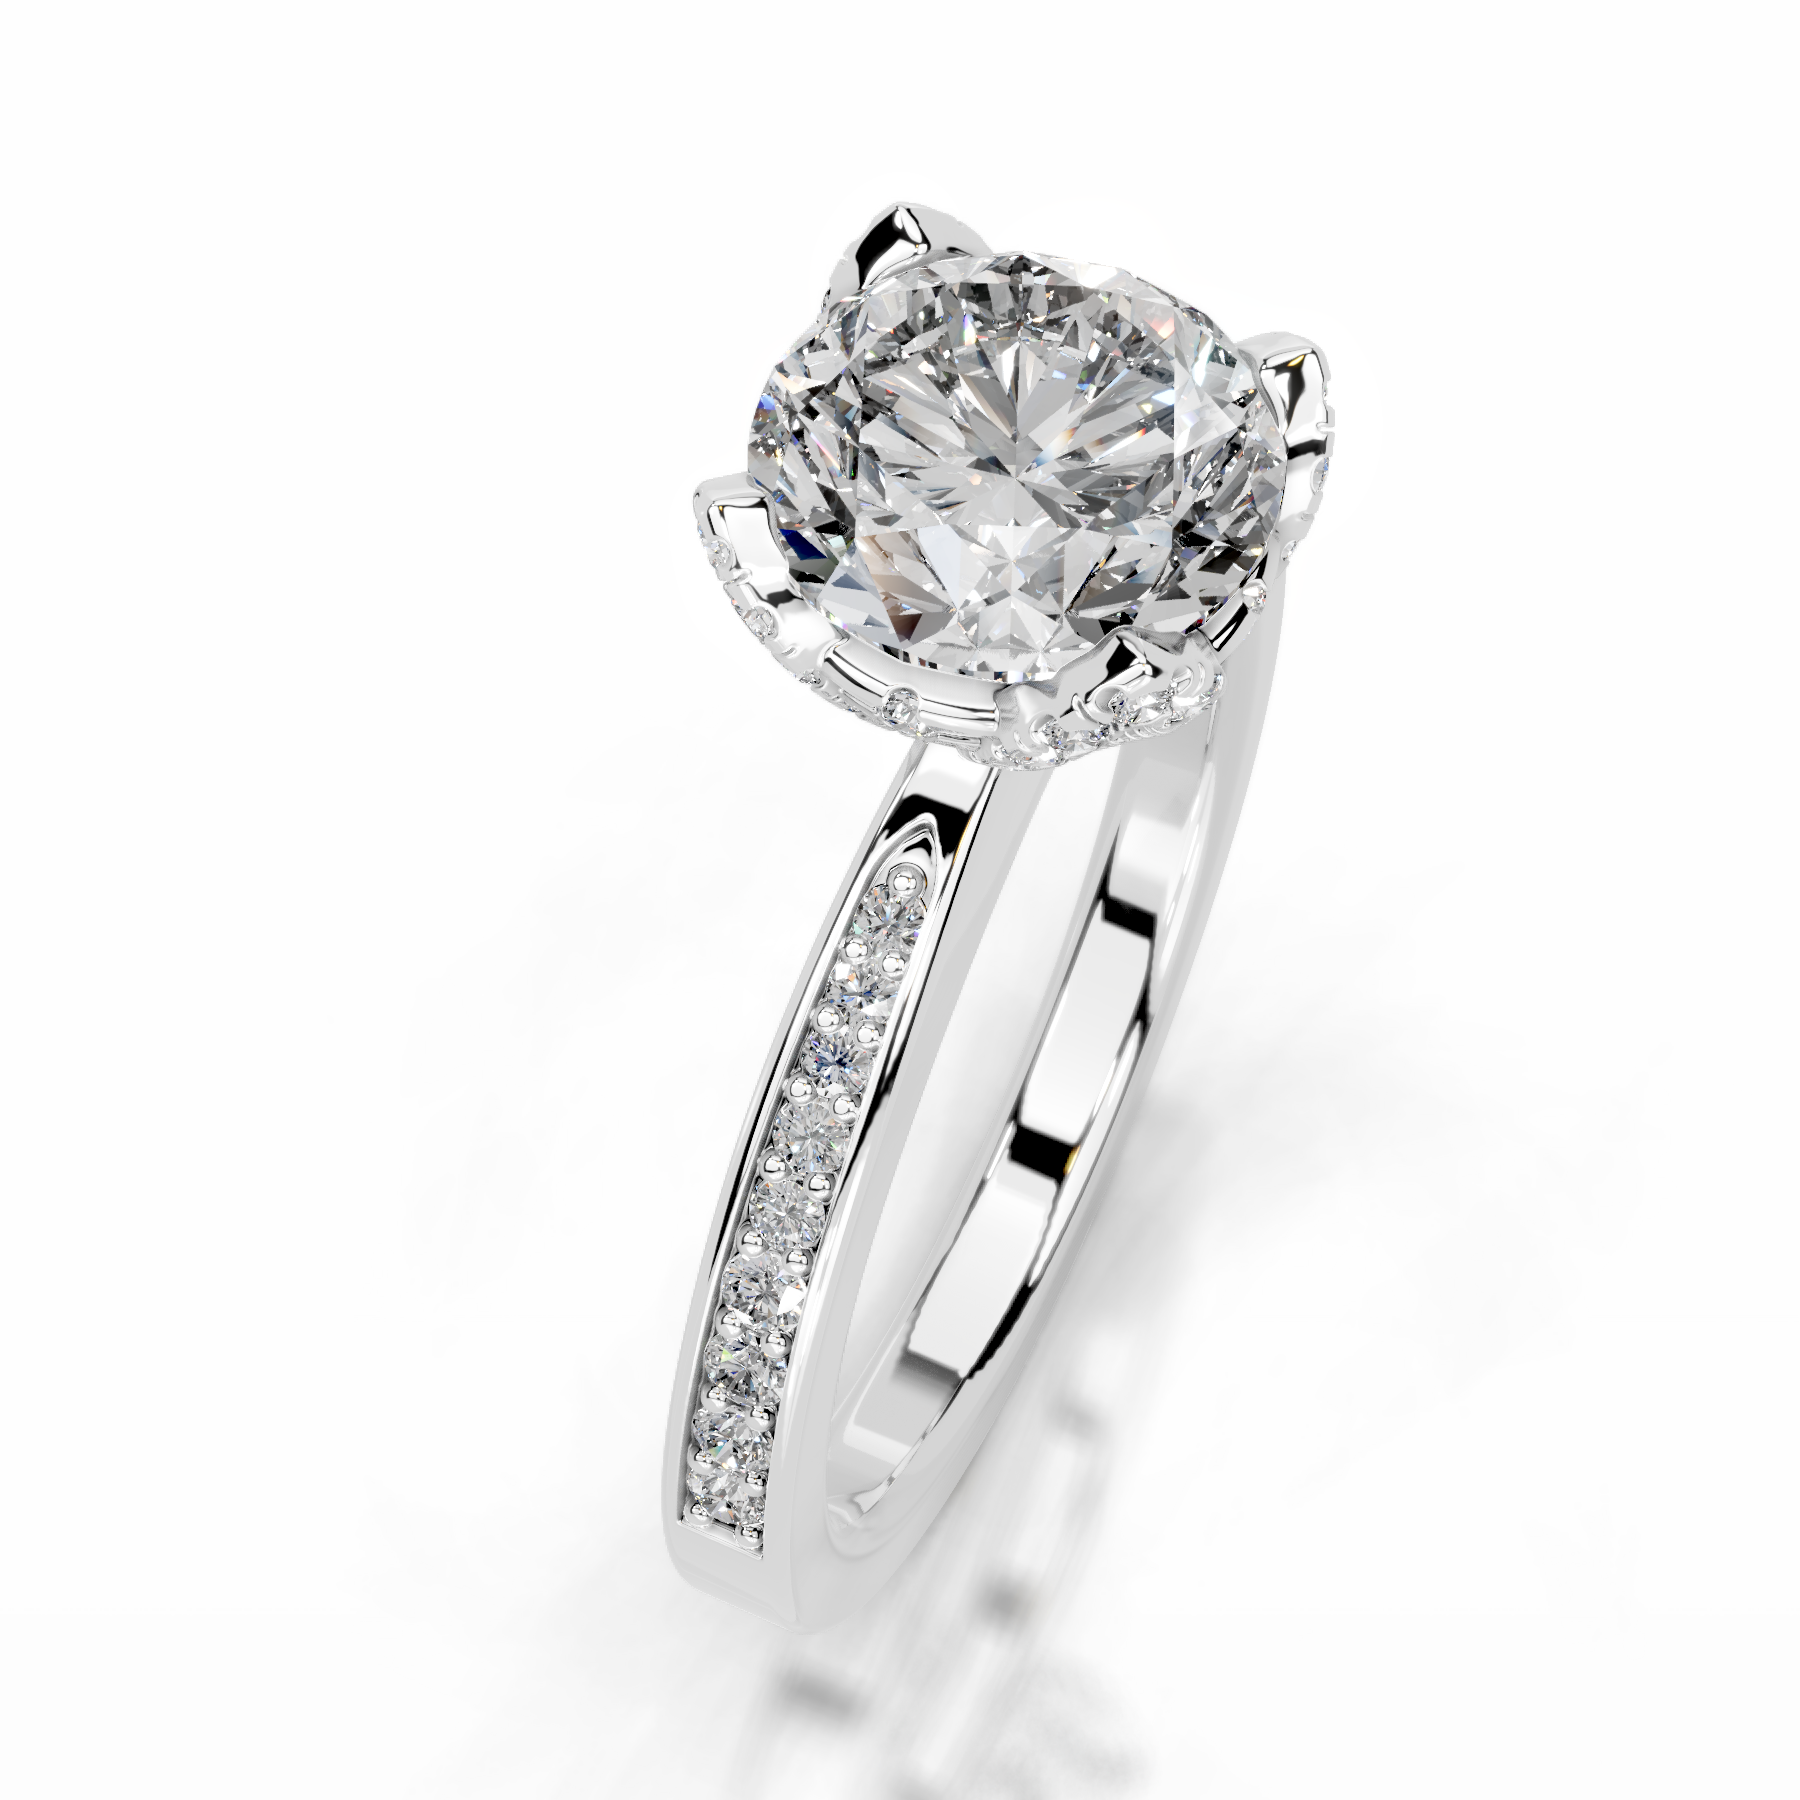 Daria Diamond Engagement Ring   (1.85 Carat) -18K White Gold